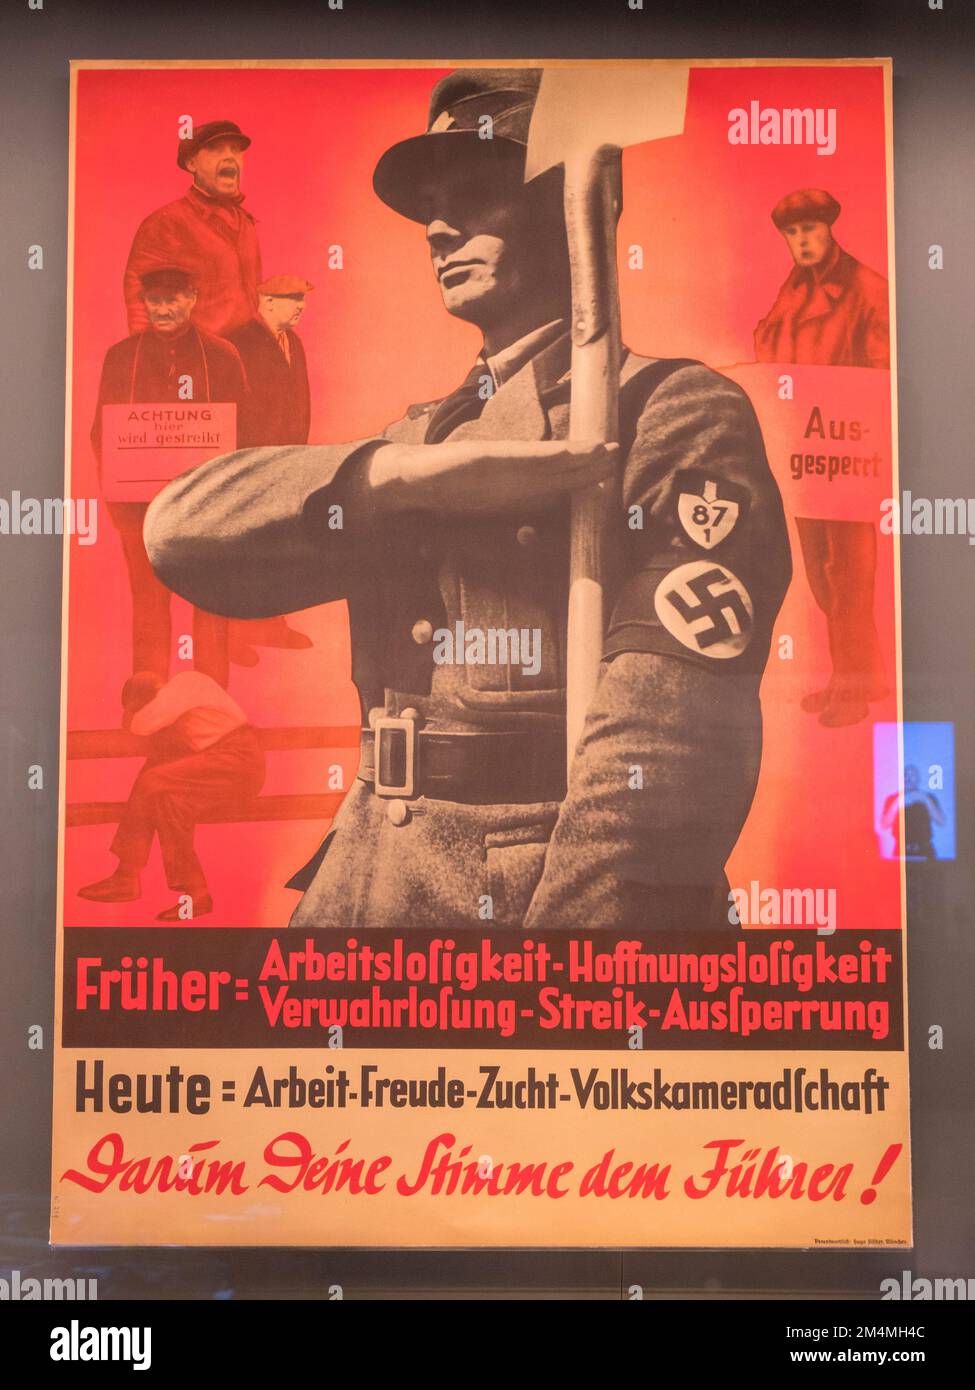 L'affiche nazie célèbre le corps du travail nazi, faisant la promotion d'un sentiment allemand de communauté, Imperial War Museum, Londres, Royaume-Uni. Banque D'Images